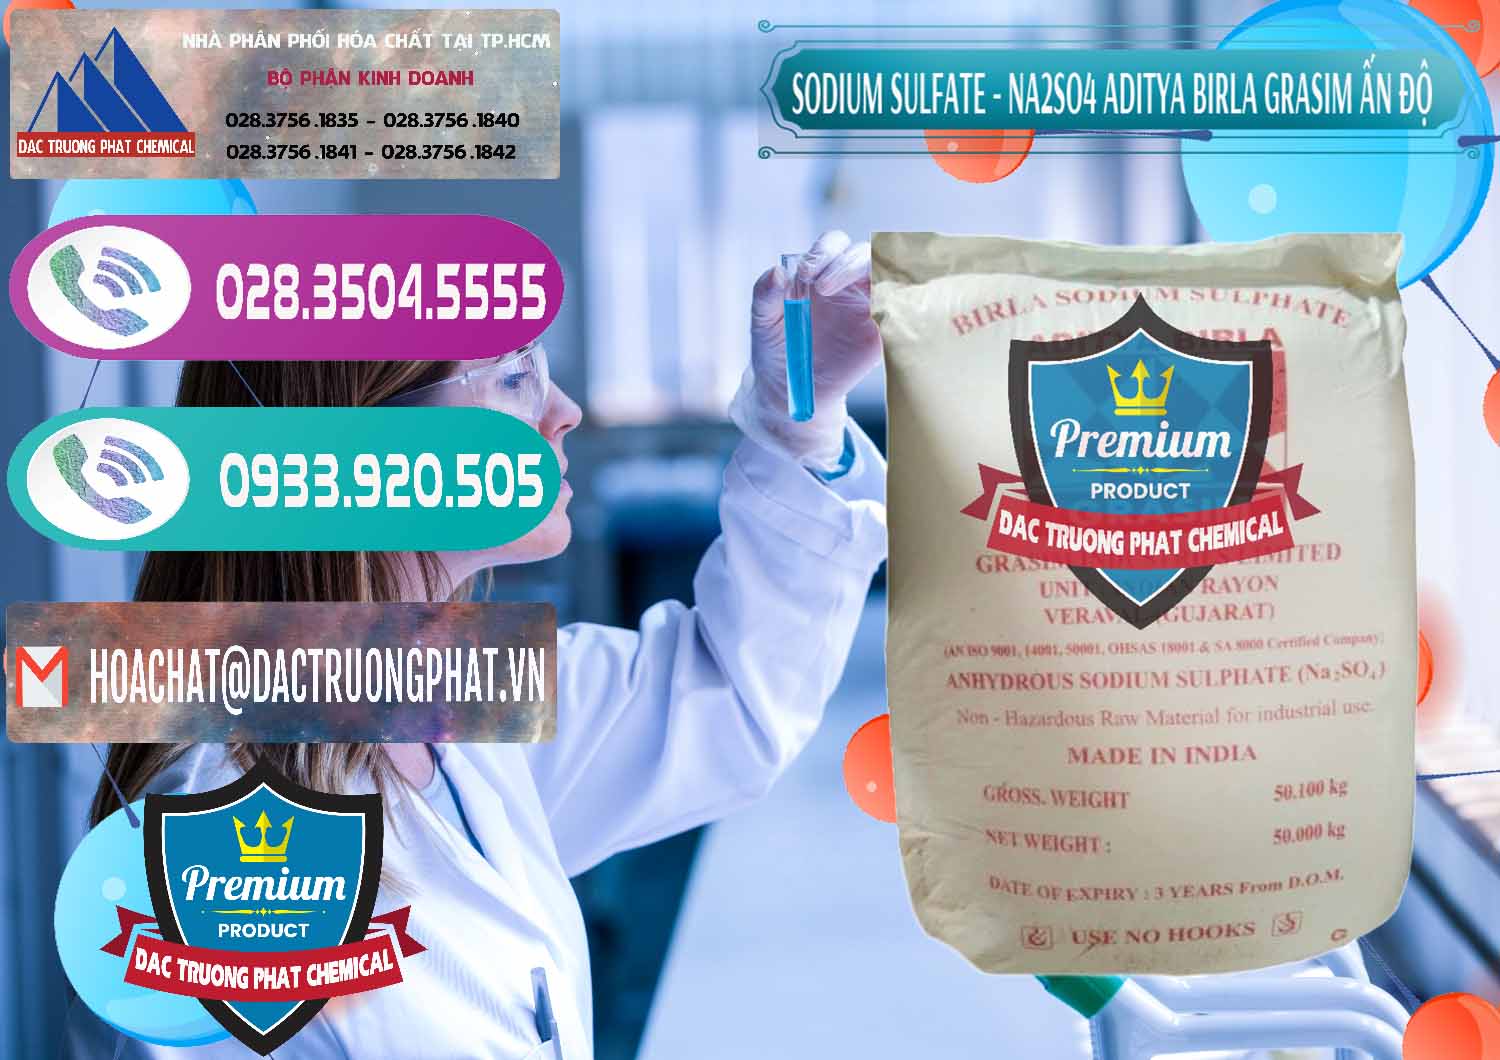 Đơn vị bán _ phân phối Sodium Sulphate - Muối Sunfat Na2SO4 Grasim Ấn Độ India - 0356 - Đơn vị chuyên bán ( phân phối ) hóa chất tại TP.HCM - hoachatxulynuoc.com